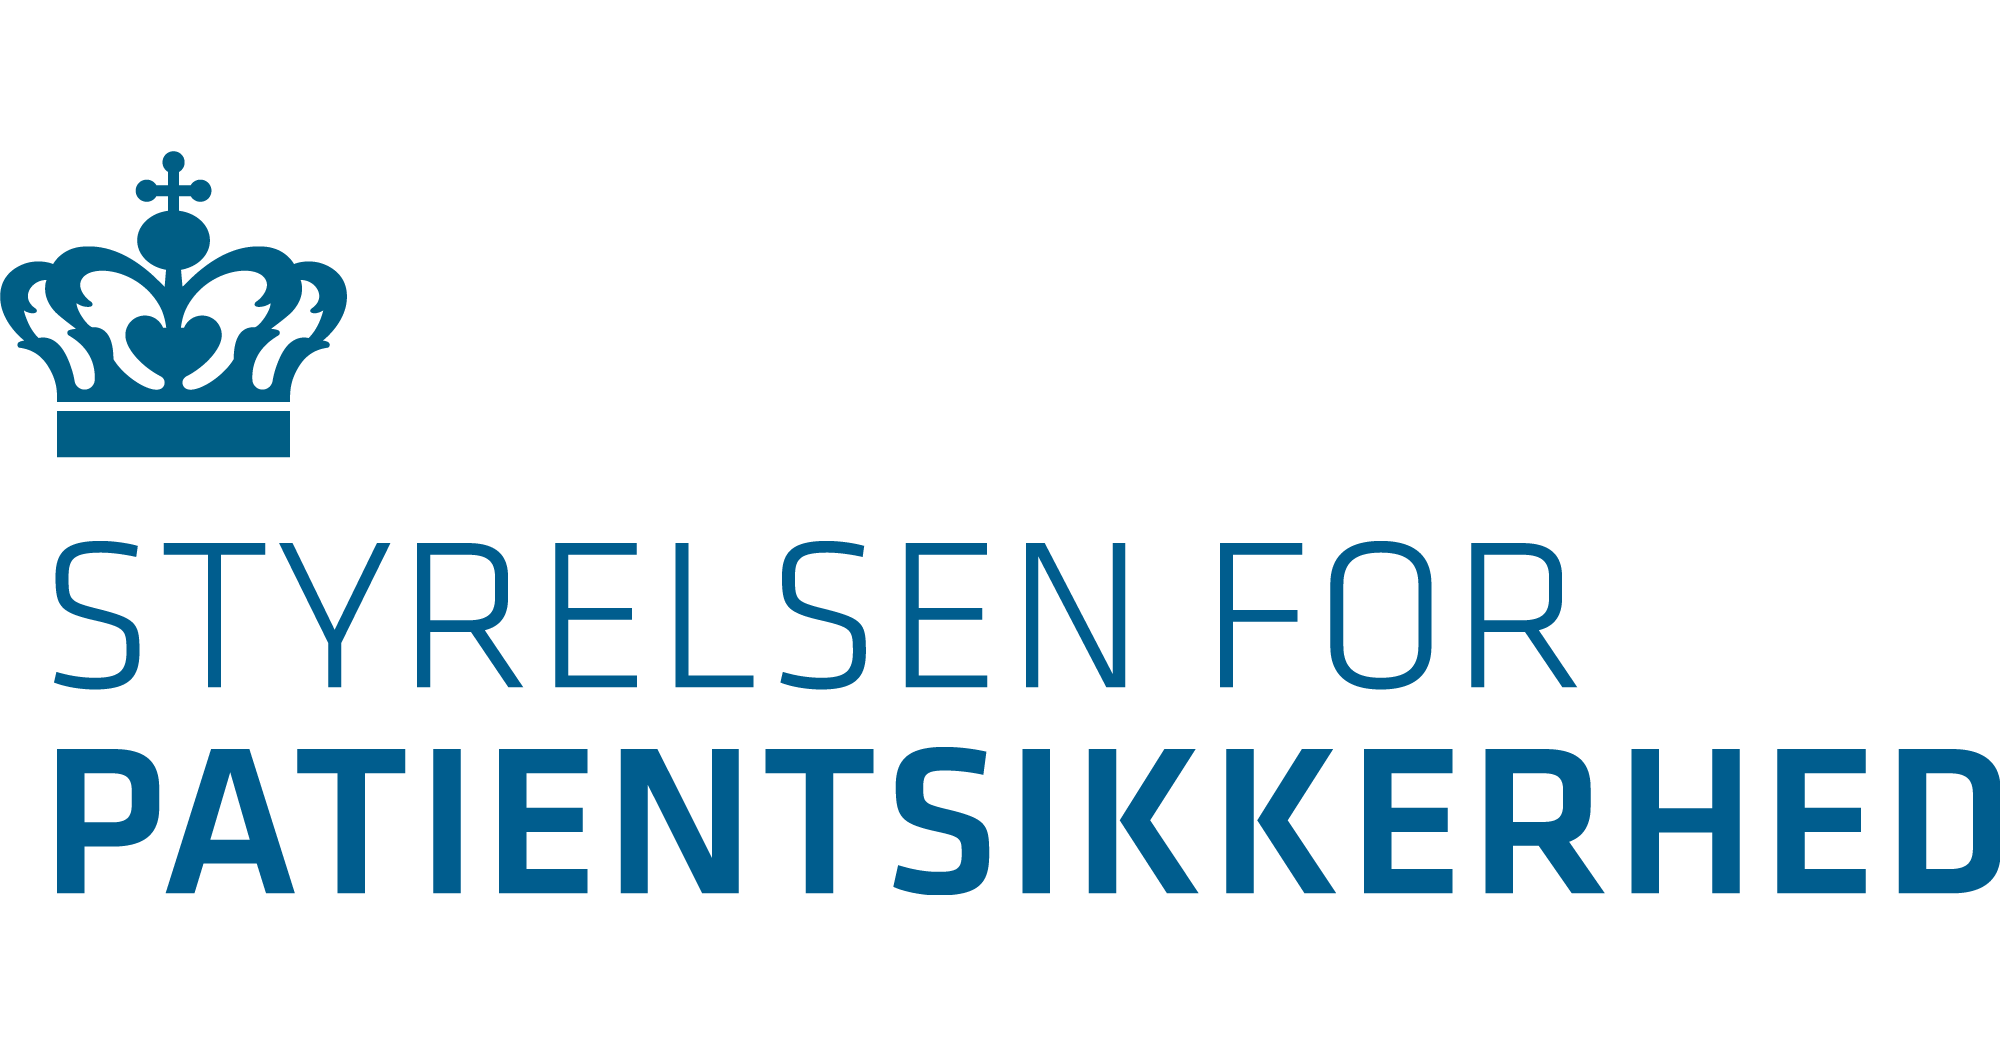 Styrelsen for Patientsikkerheds logo